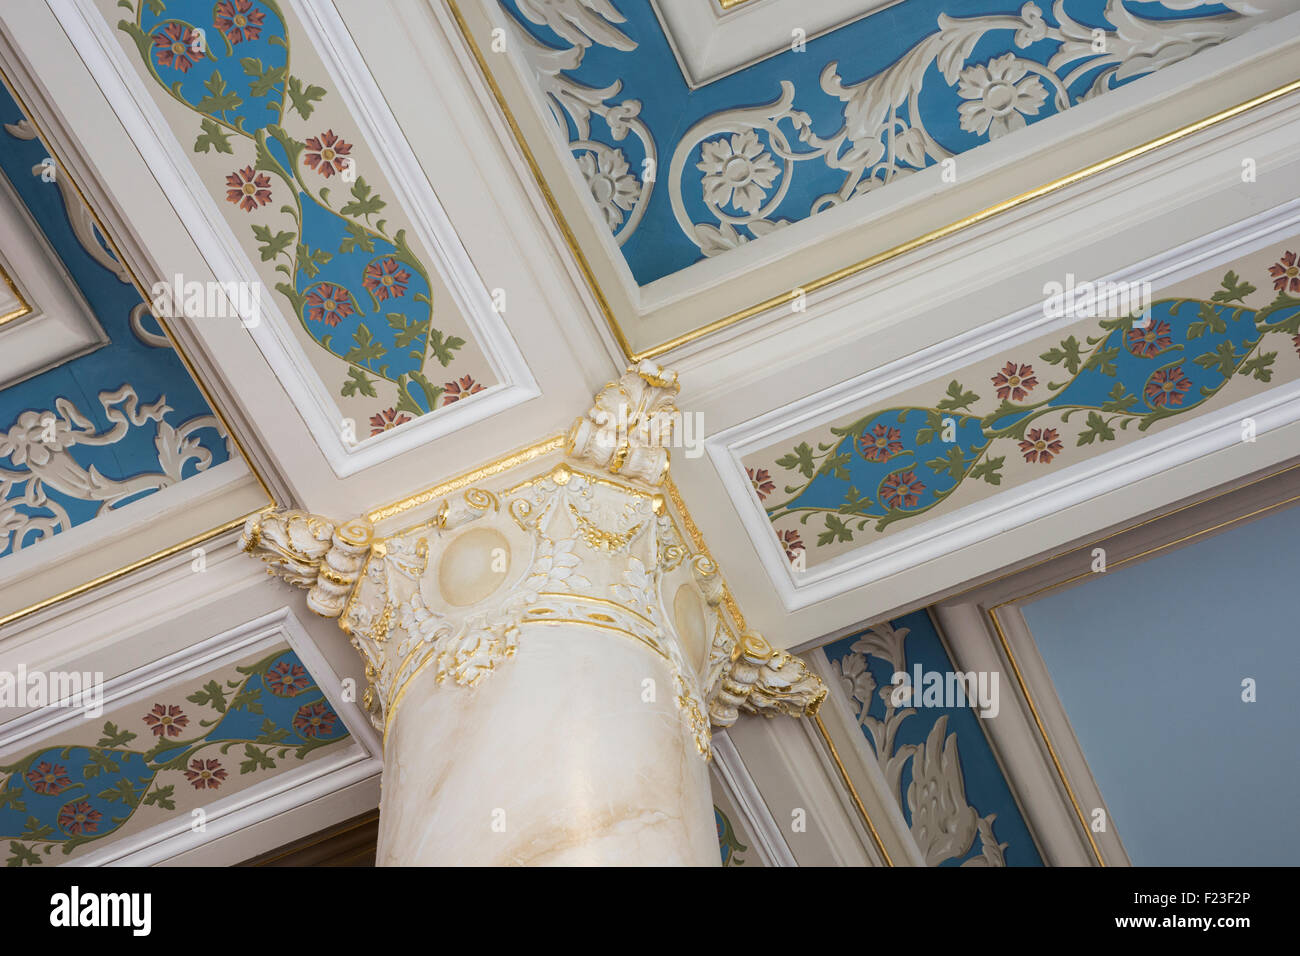 Dettagli architettonici del placcato in oro e il soffitto dipinto al francese leccare Hotel Resort, Francese leccare, IN, STATI UNITI D'AMERICA Foto Stock